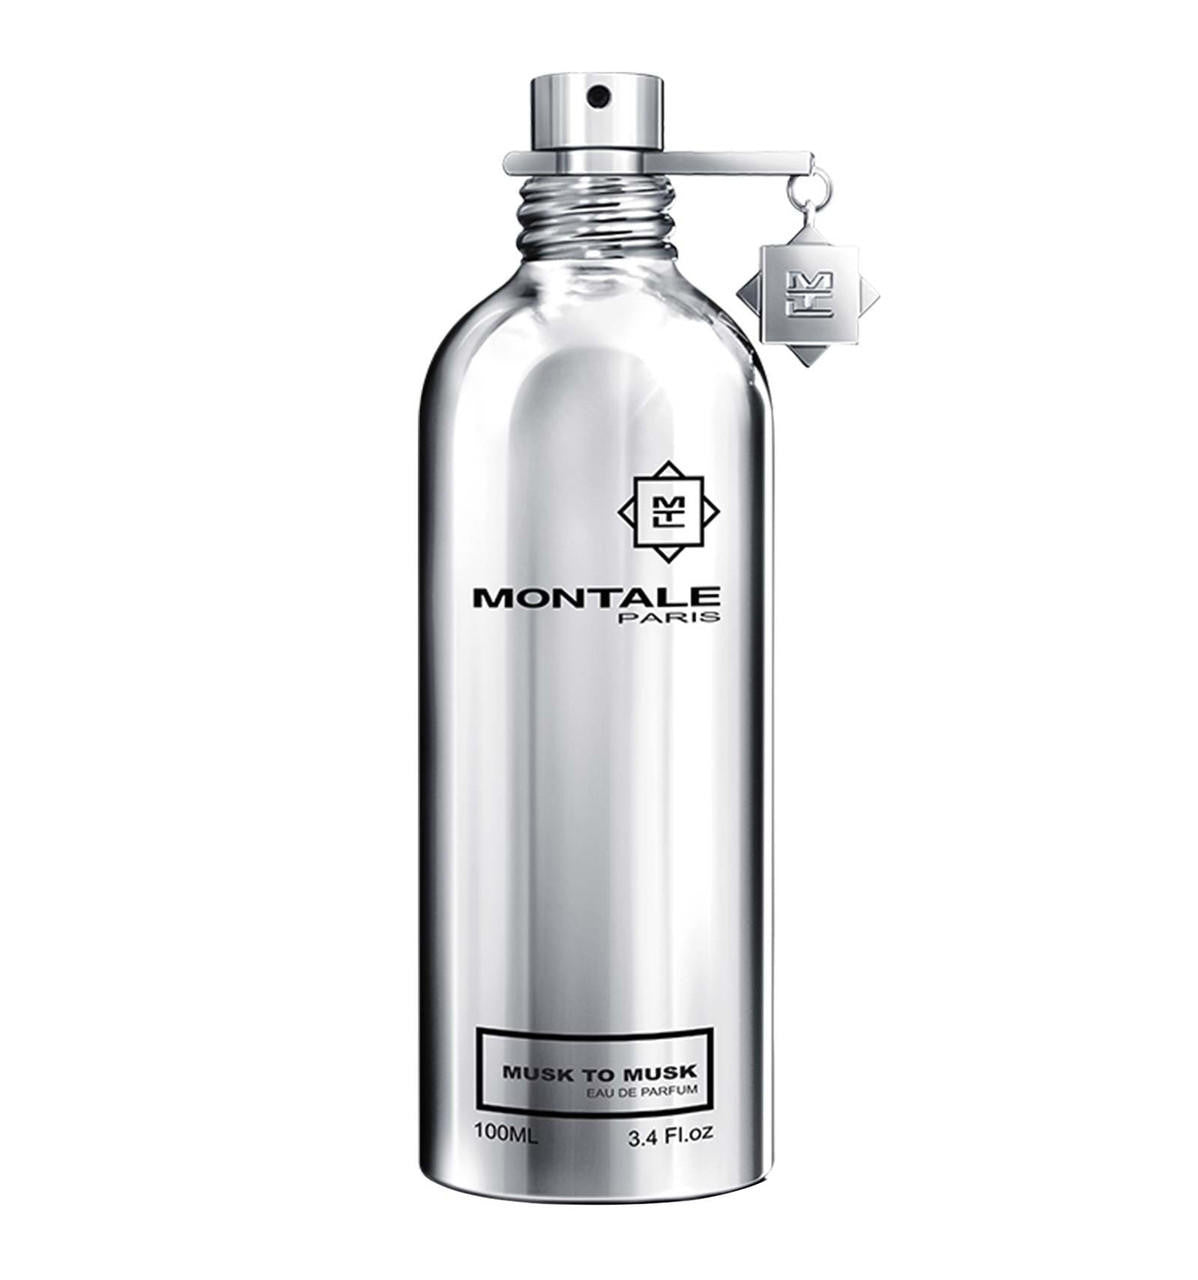 Montale Paris Musk To Muskt Eau De Parfum 100 ML